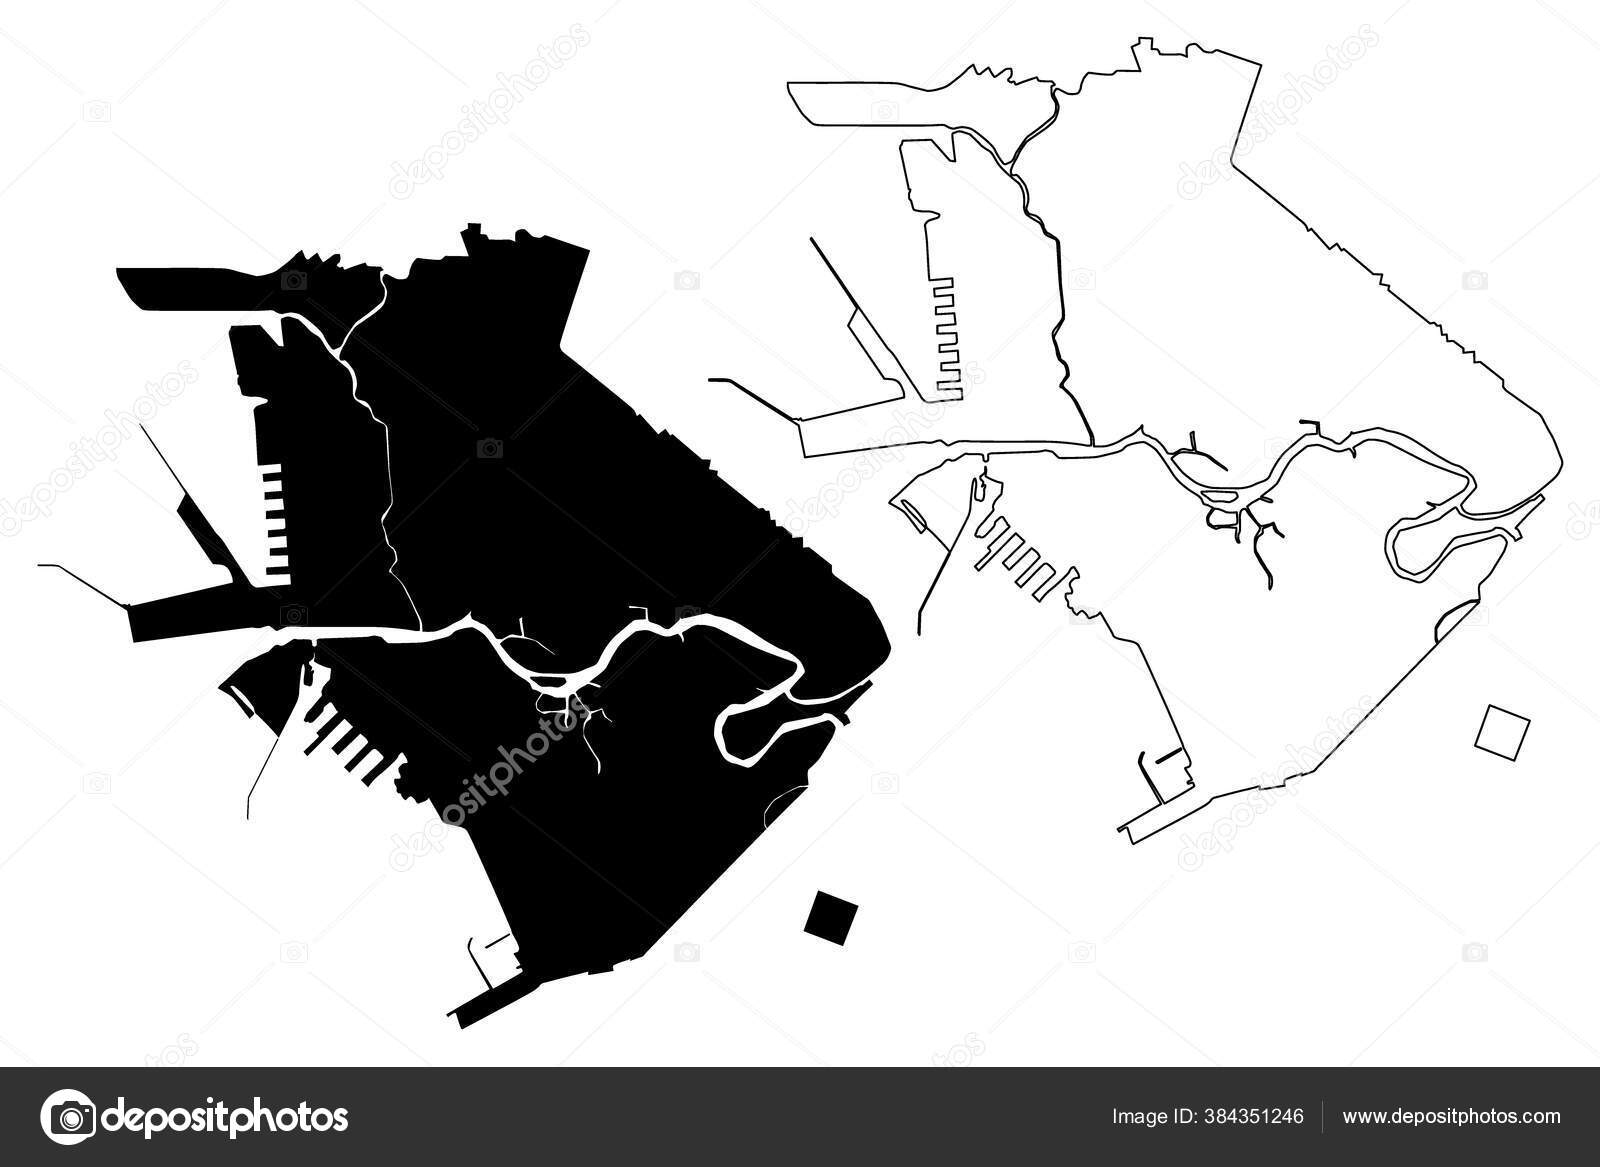 マニラ市 フィリピン共和国 マニラ首都圏 首都圏 地図ベクトル図 スケッチブックマニラ市地図 ストックベクター C Danler